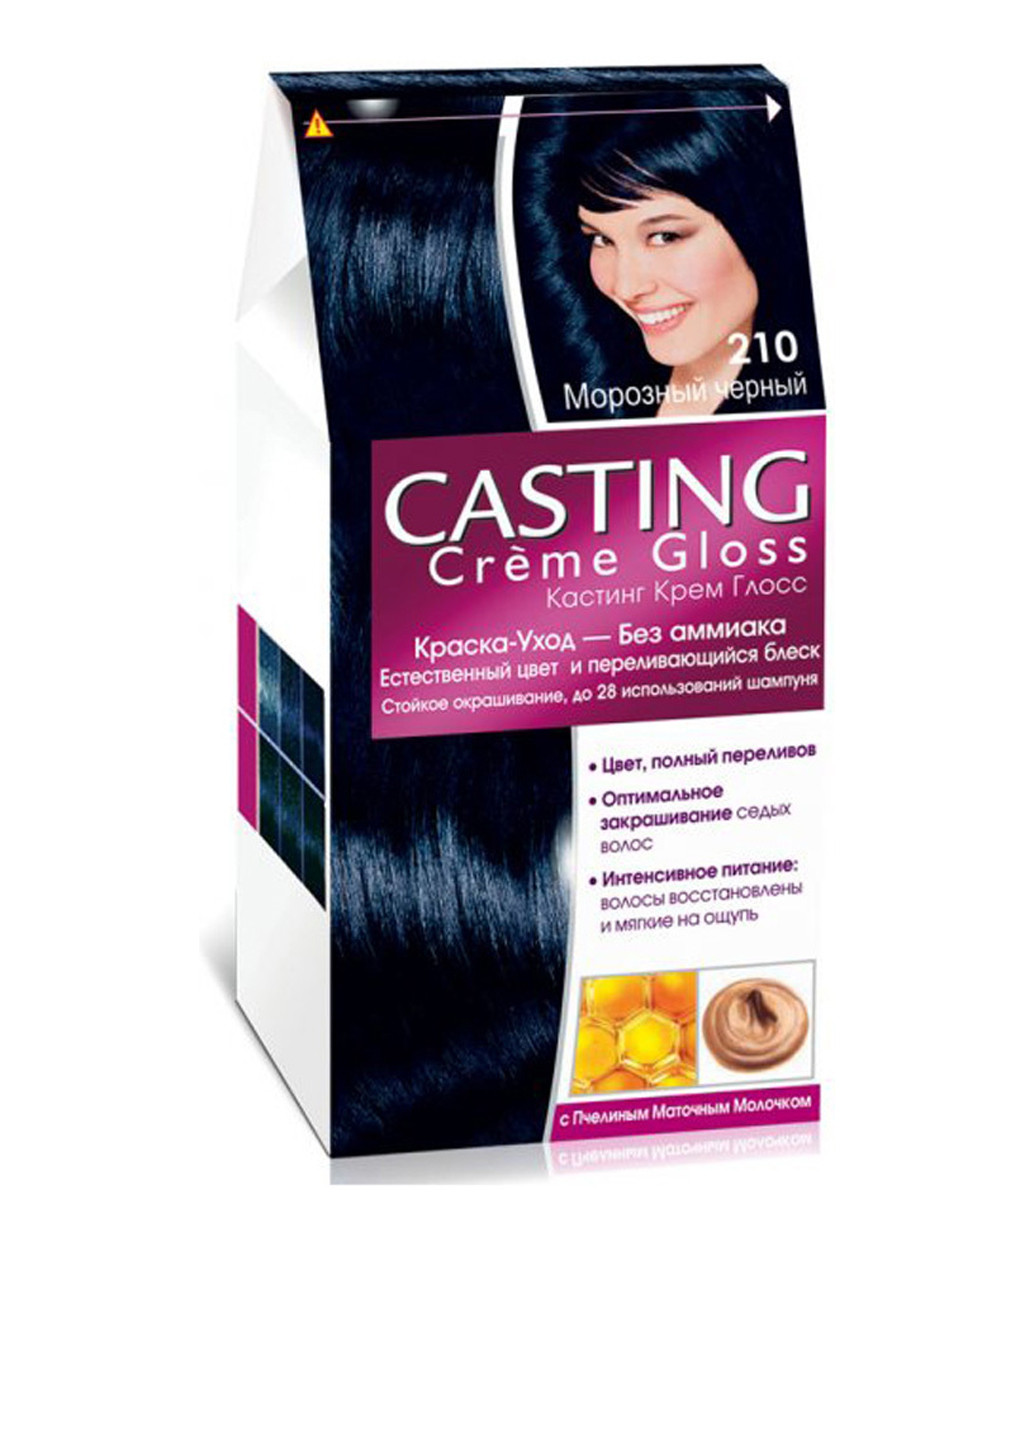 Фарба для волосся L'oreal Casting Creme Gloss 210 Чорний перламутровий L'Oreal Paris (88095277)